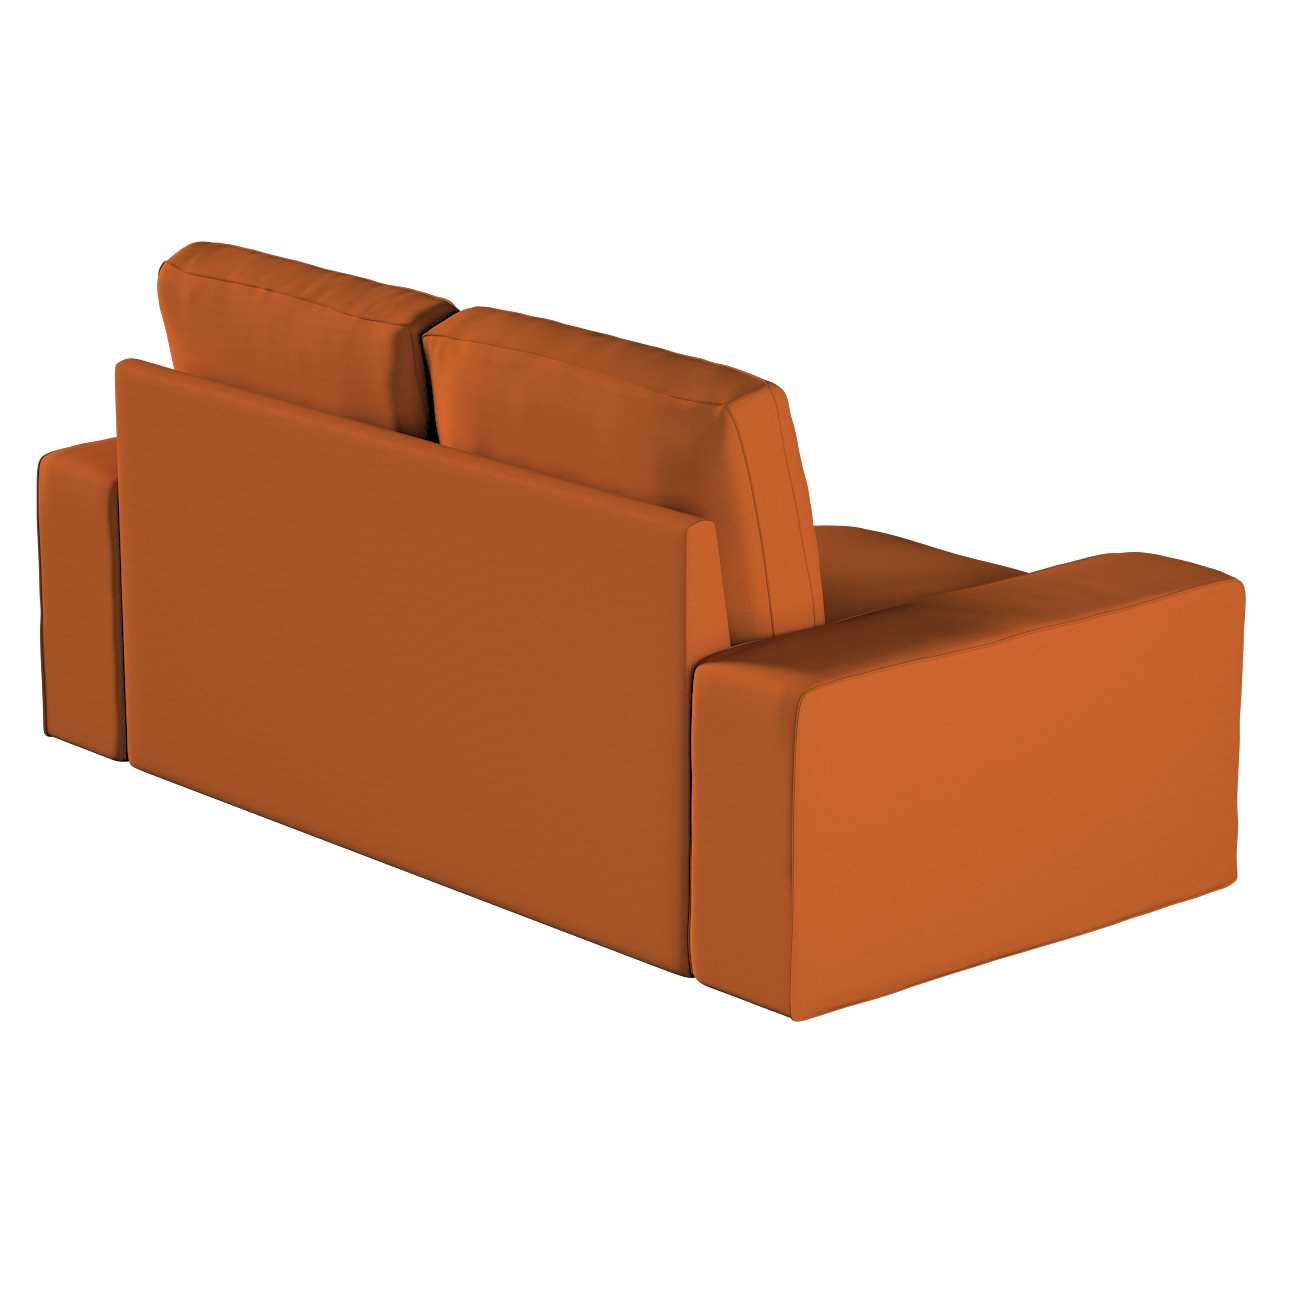 Bezug für Kivik 2-Sitzer Sofa, Karamell, Bezug für Sofa Kivik 2-Sitzer, Cot günstig online kaufen